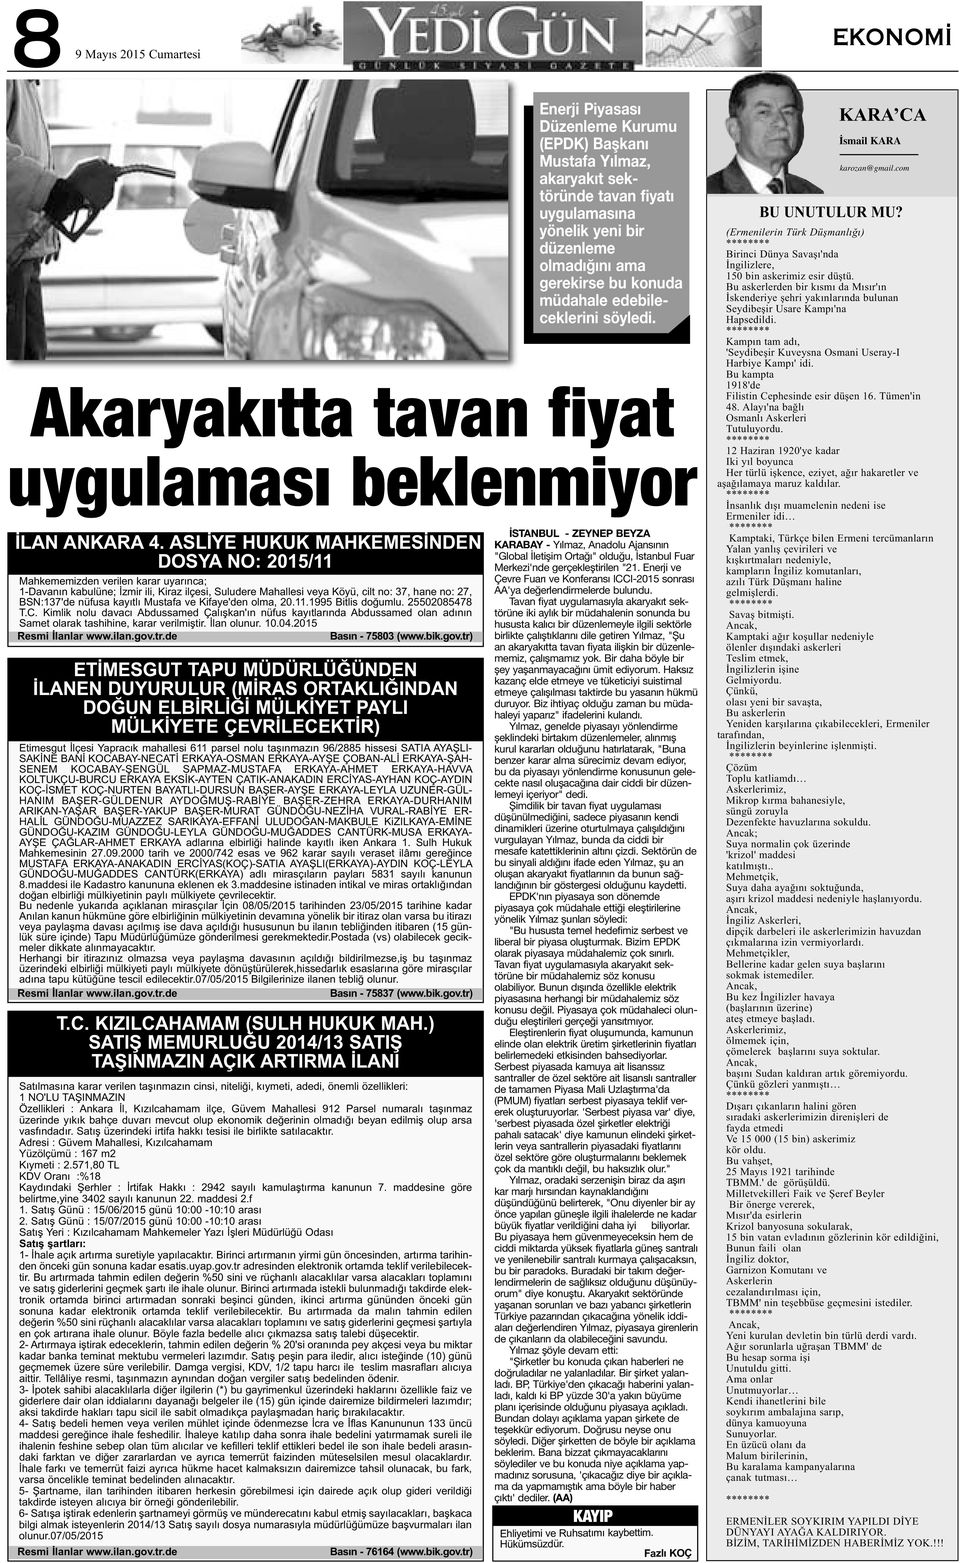 nüfusa kayıtlı Mustafa ve Kifaye'den olma, 20.11.1995 Bitlis doğumlu. 25502085478 T.C.